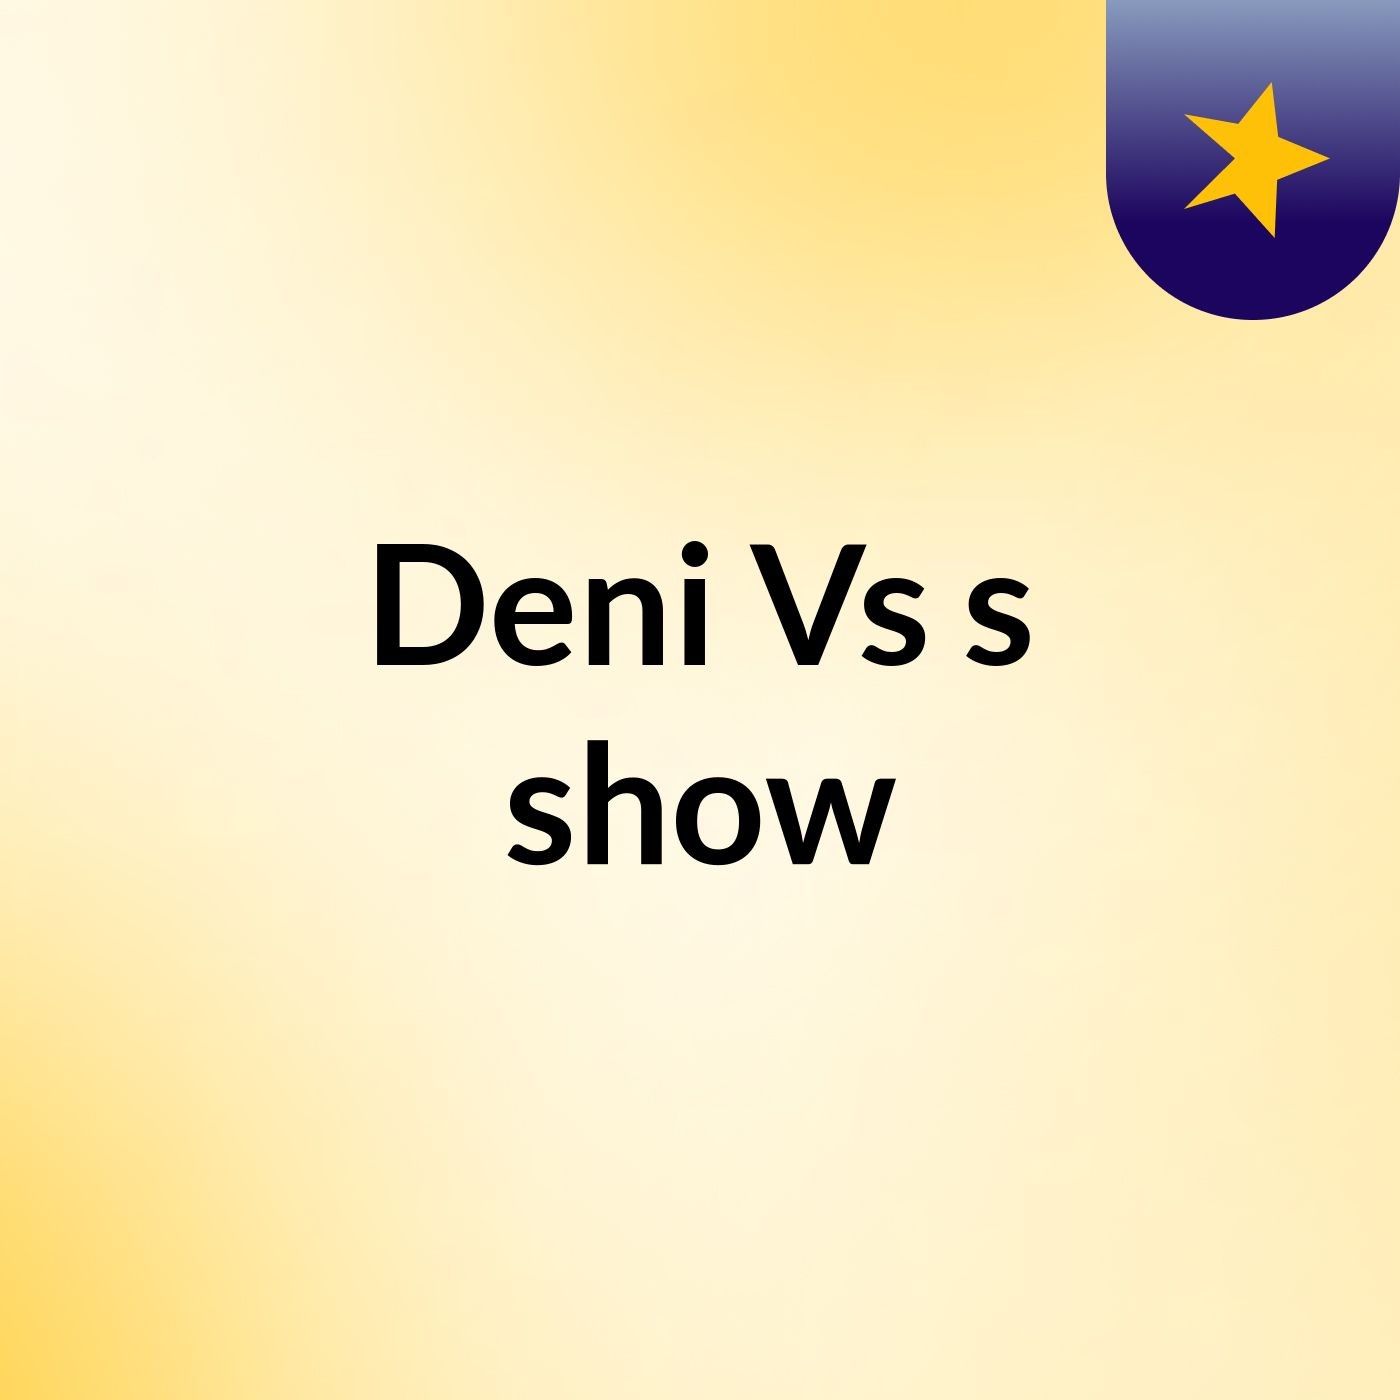 Deni Vs's show